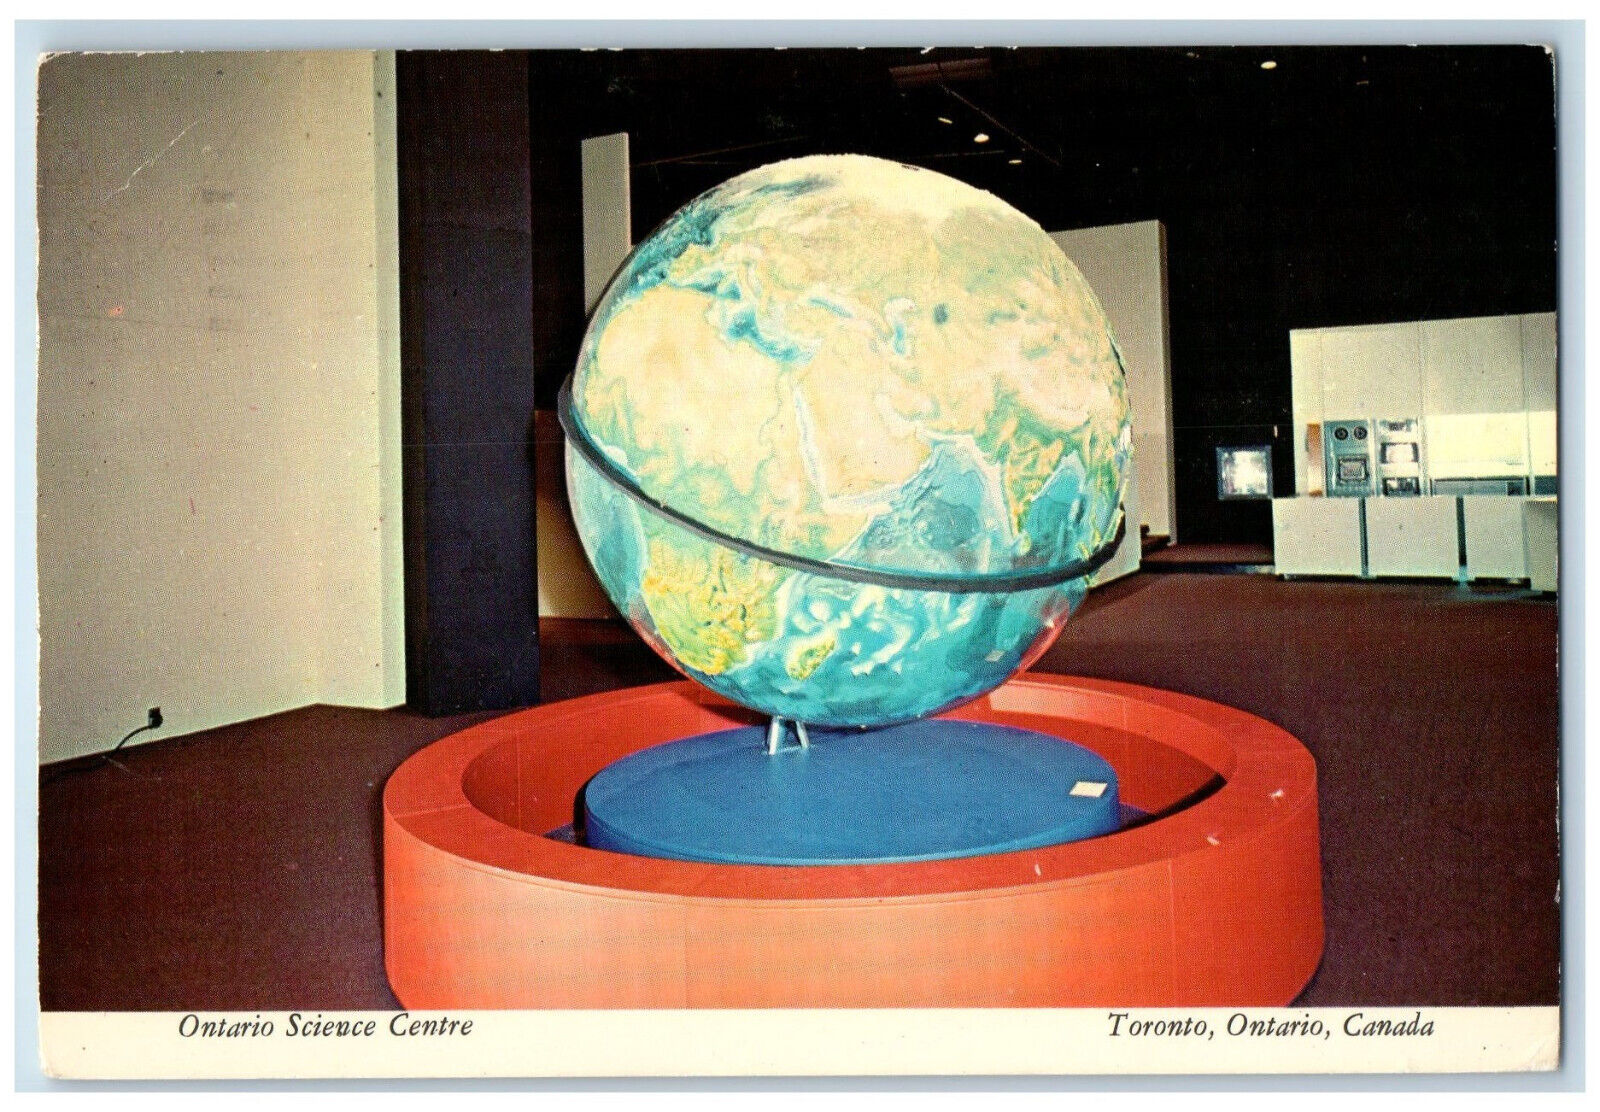 1974 Globe Map Ontario Science Centre Toronto Ontario Canada Vintage Postcard